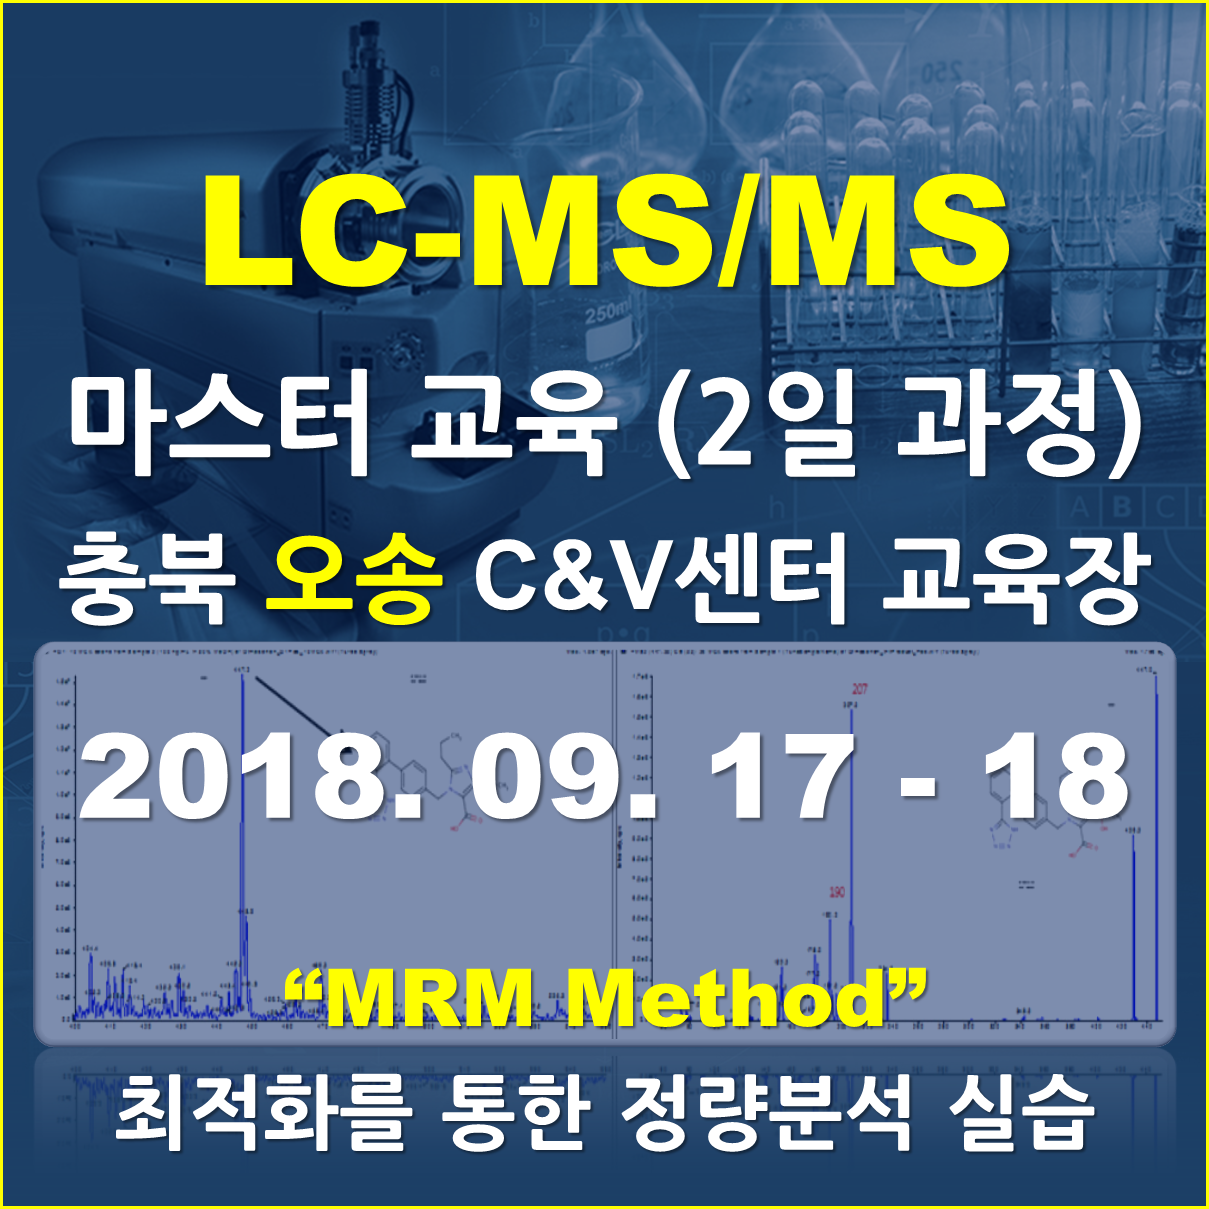 [오송 교육장] - LC-MS/MS 마스터과정 (2일 과정)